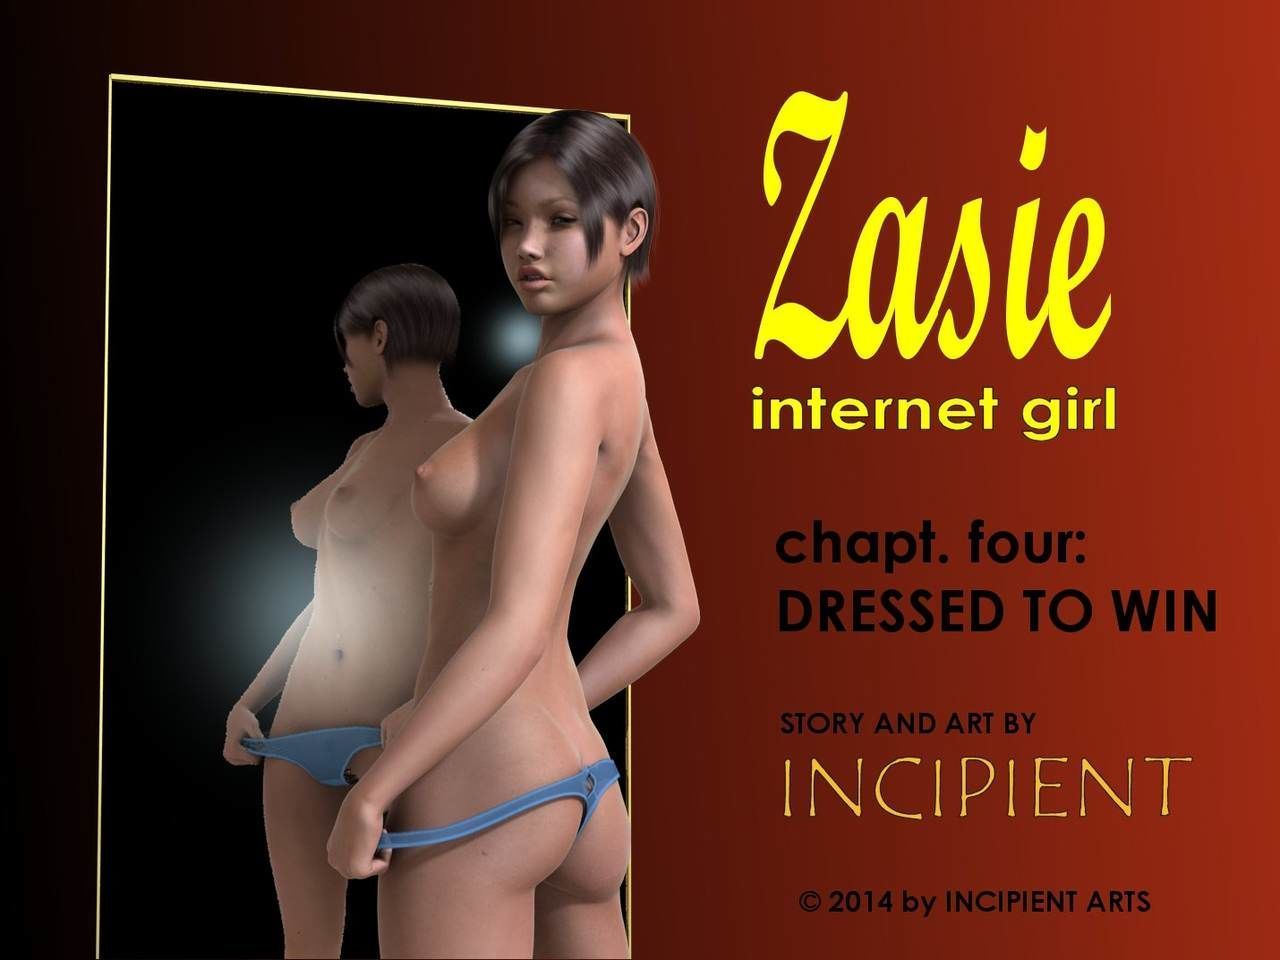 [Incipient] Zasie Internet Girl Ch. 4: Dressed To Win